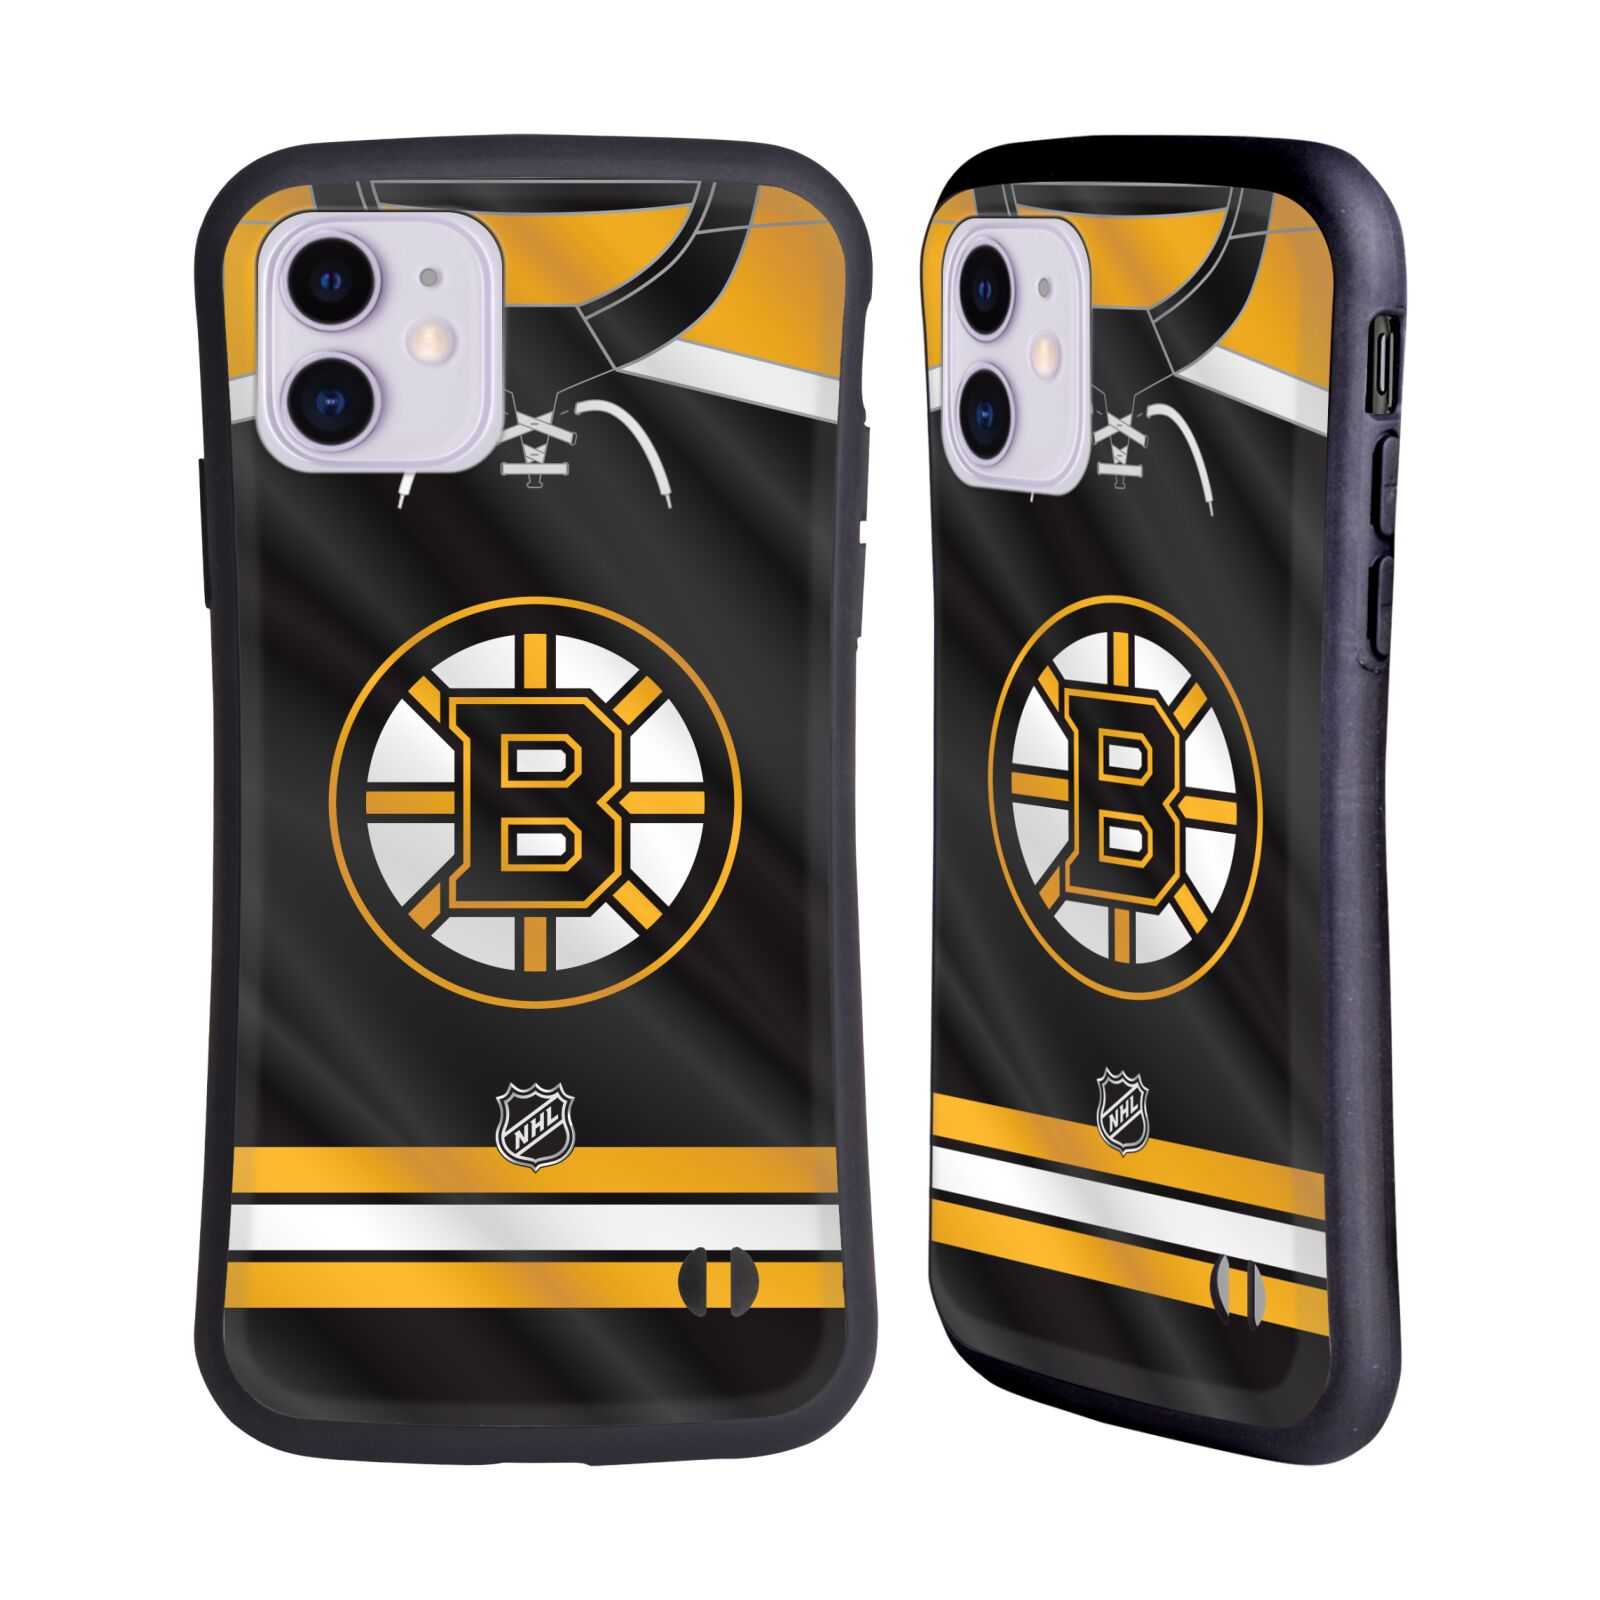 Obal na mobil Apple iPhone 11 - HEAD CASE - NHL - Boston Bruins znak na dresu